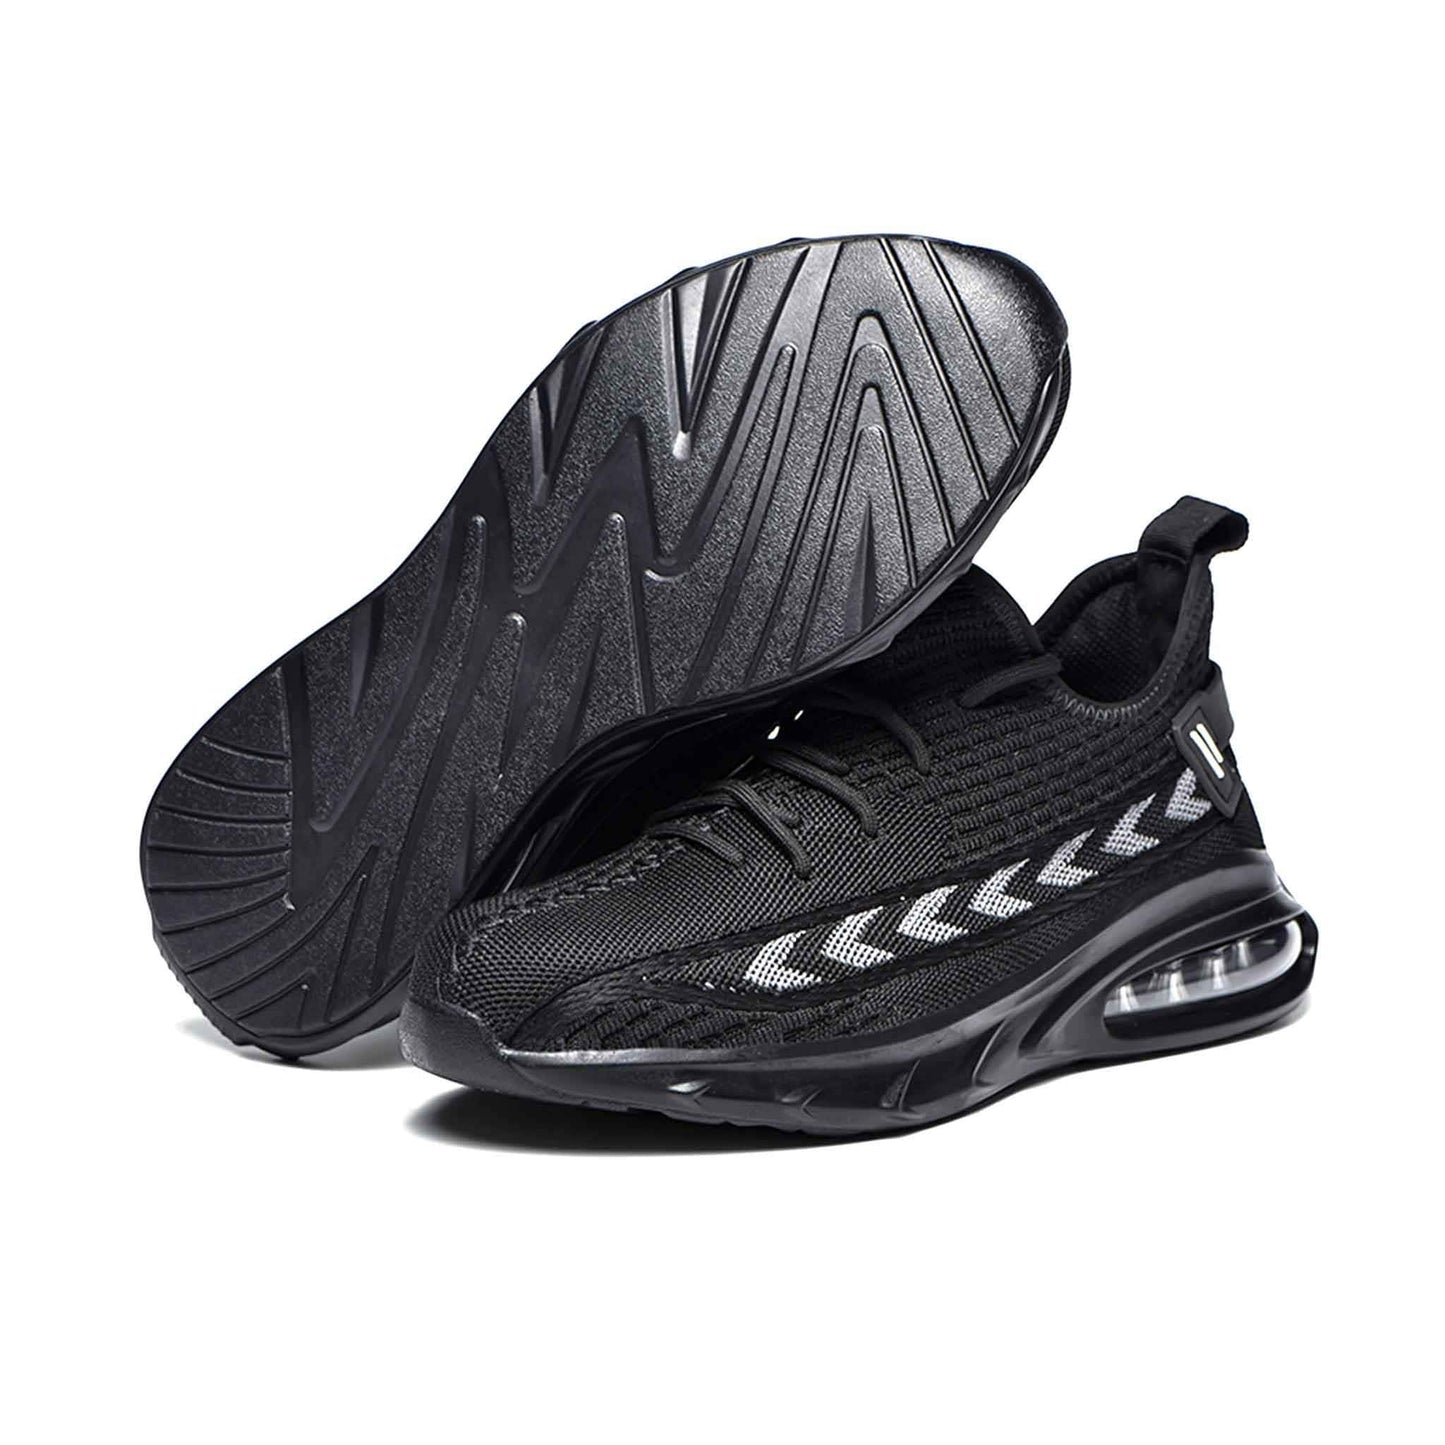 Ironfeet Storm - Chaussures de sécurité légères avec bulles d'air